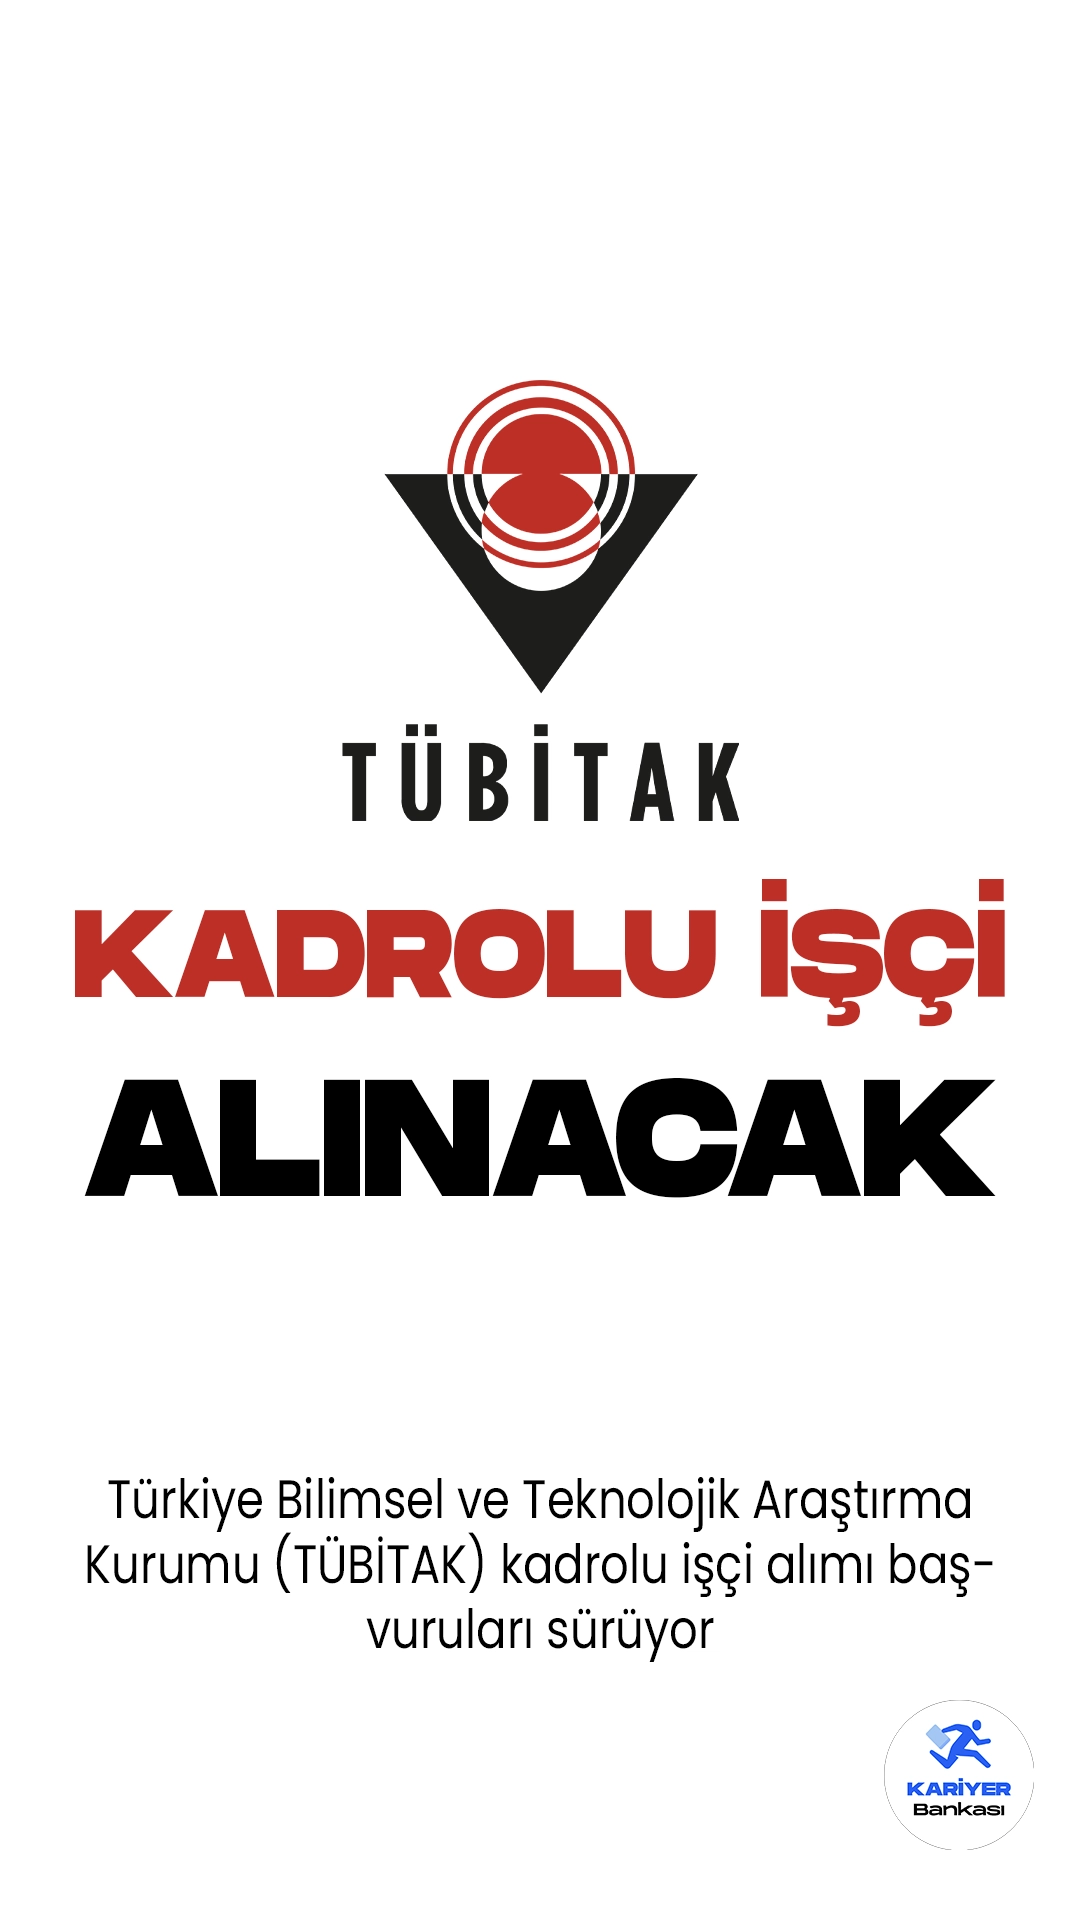 Türkiye Bilimsel ve Teknolojik Araştırma Kurumu (TÜBİTAK) kadrolu işçi alımı başvuruları sürüyor.İlgili alım duyurusunda başvuruların 19 Haziran itibariyle başladığı, başvuru yapacak adayların belirtilen şartları dikkatle incelemesi gerektiği kaydedildi.